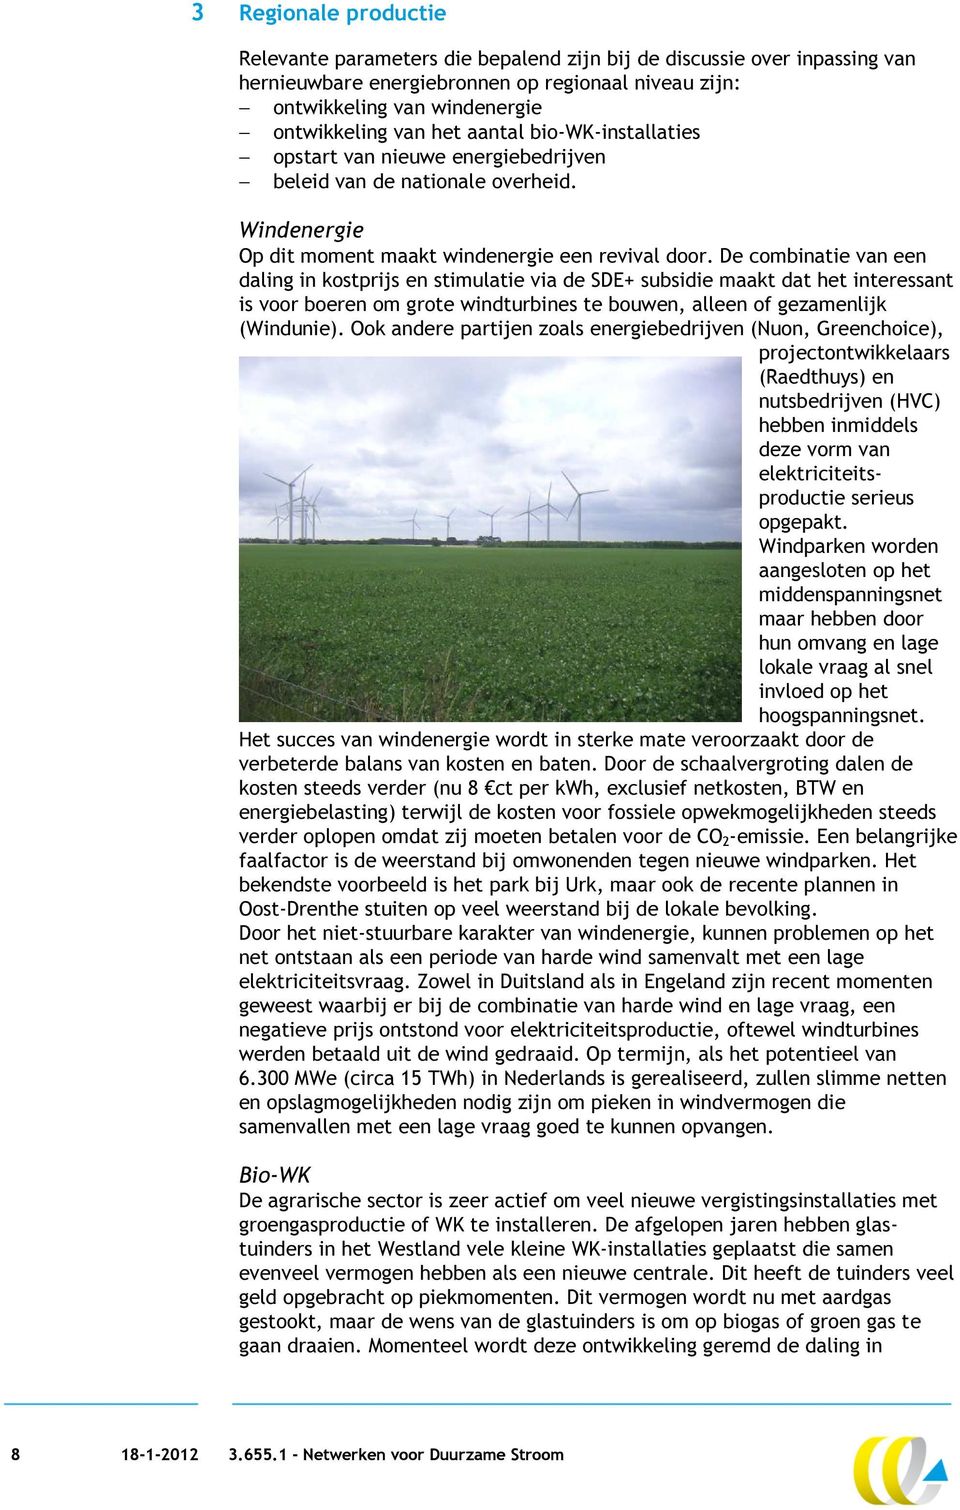 De combinatie van een daling in kostprijs en stimulatie via de SDE+ subsidie maakt dat het interessant is voor boeren om grote windturbines te bouwen, alleen of gezamenlijk (Windunie).